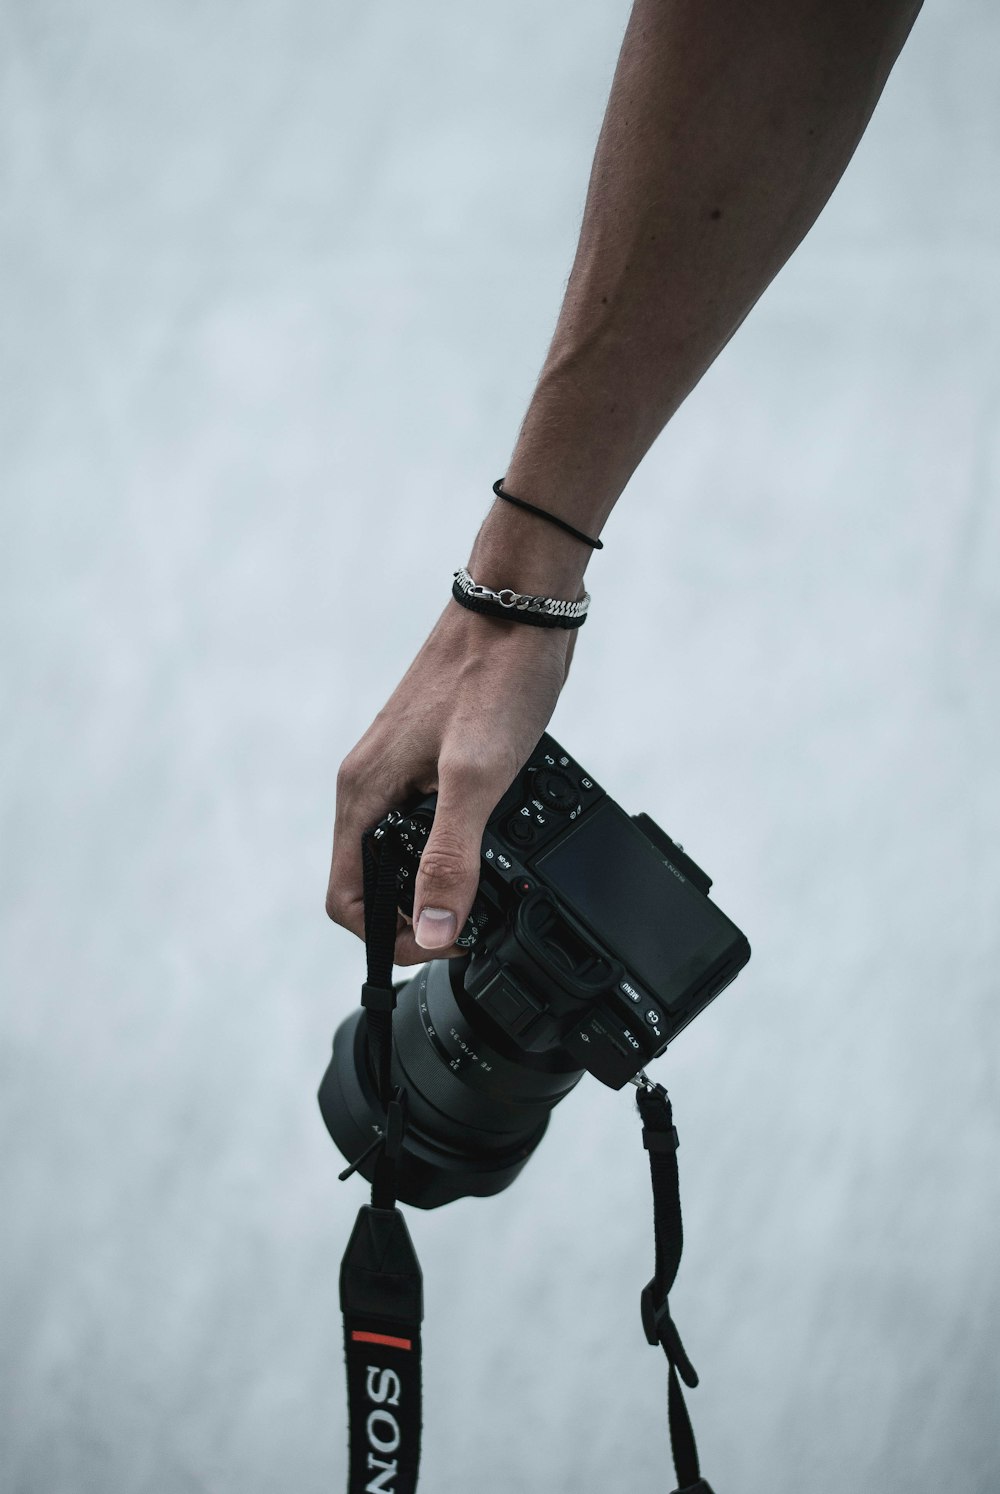 Persona sosteniendo una cámara réflex digital negra